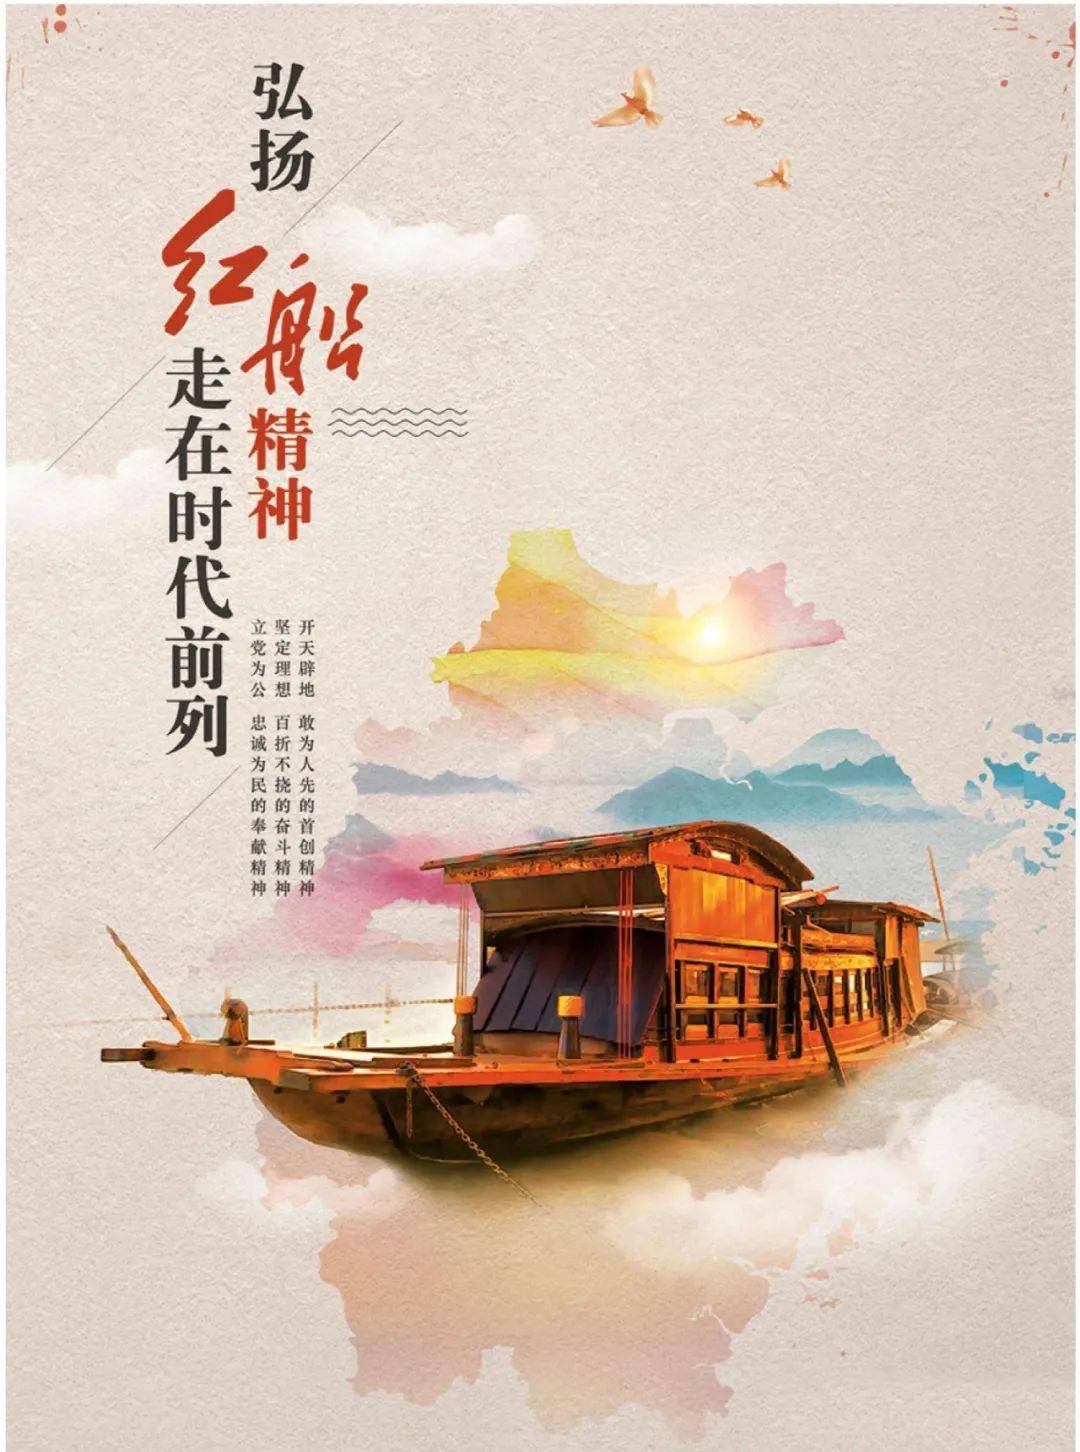 红船颂驶向民族复兴的方向沿着中国特色新航线一代又一代的掌舵人英明